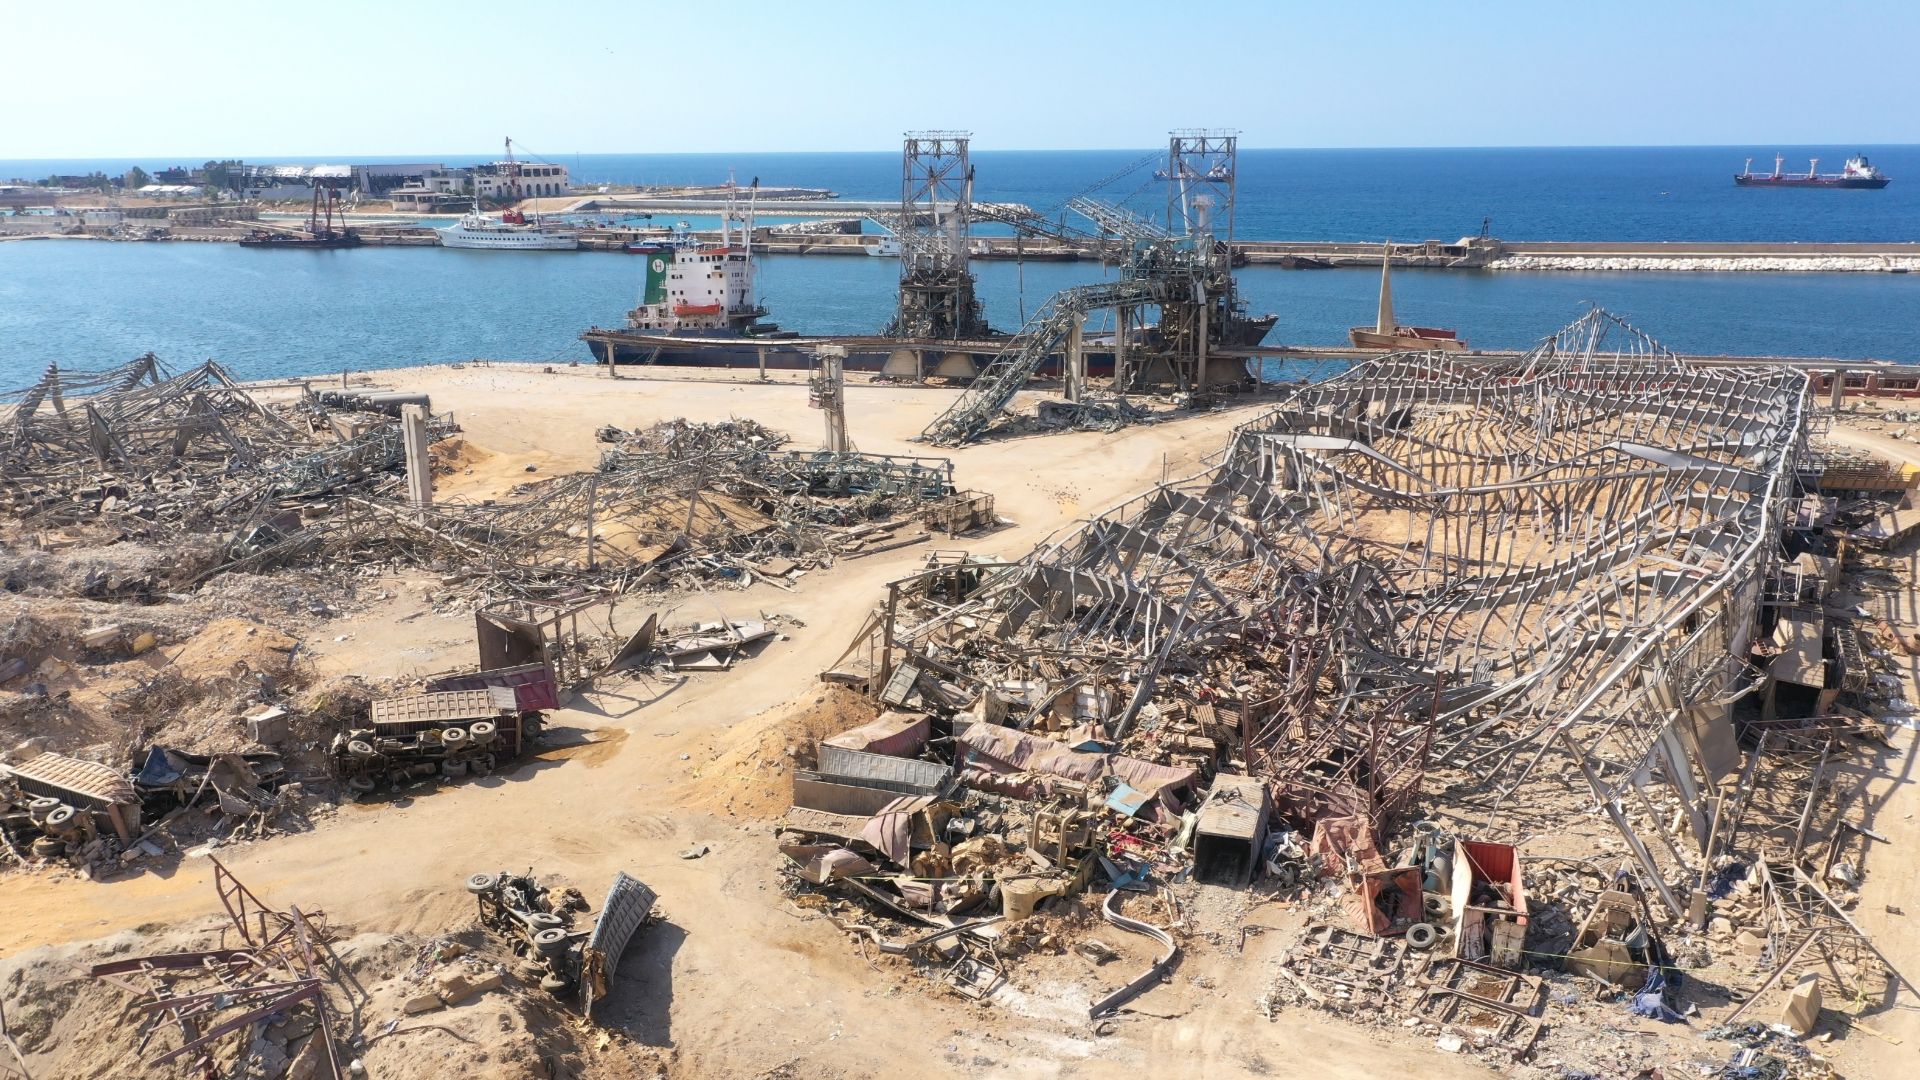 Beirut Port blast 2020 anniversary 2021